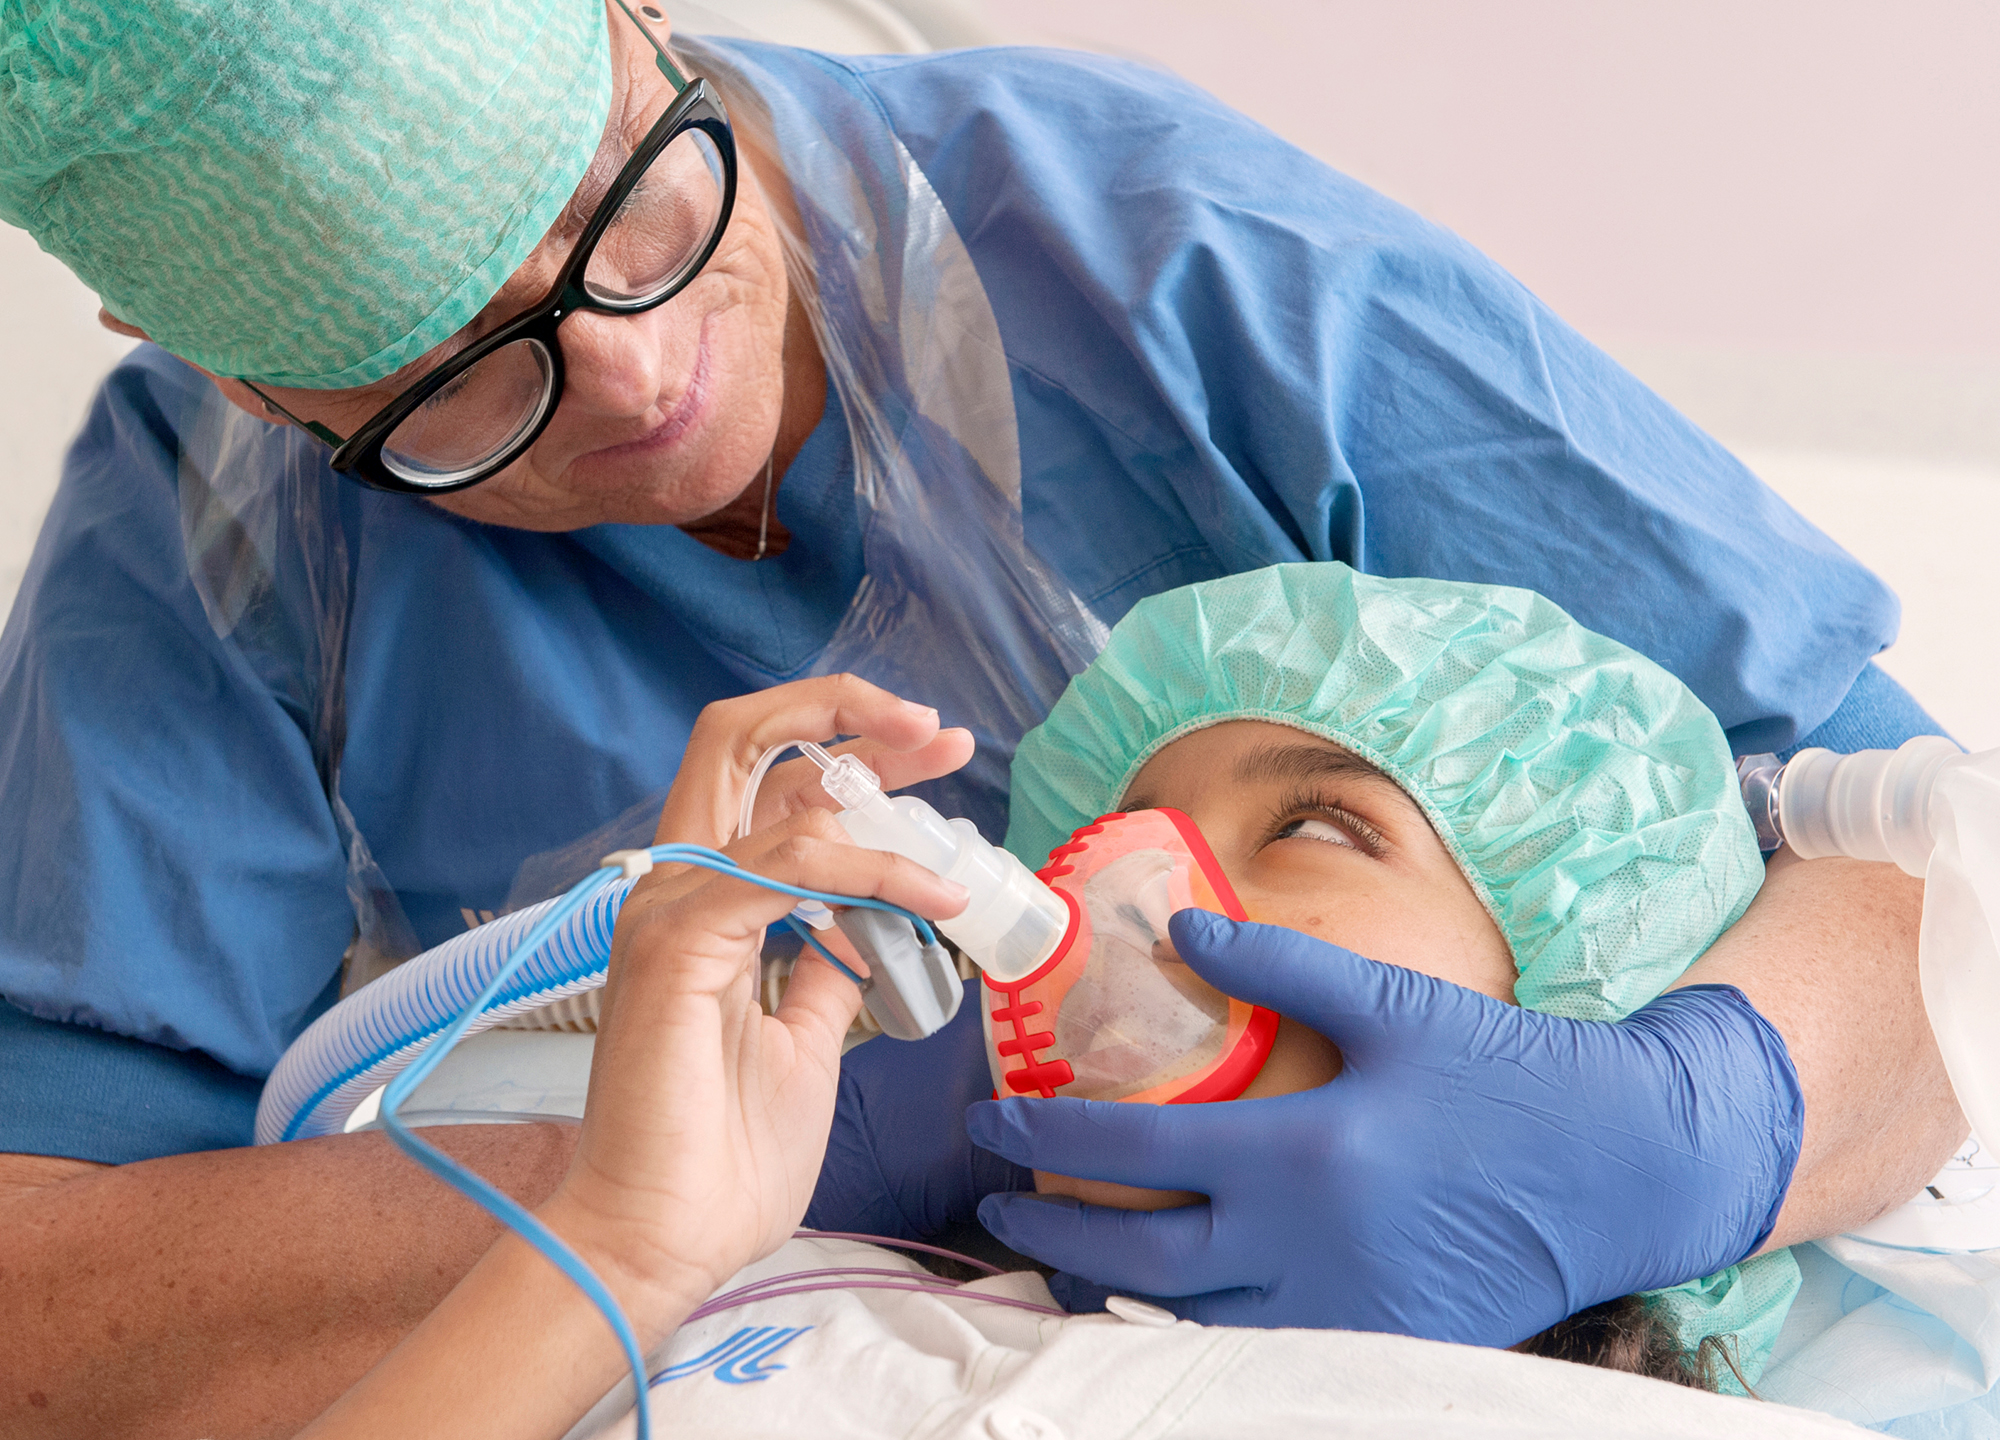 Sjuksköterska sitter bakom ett barn och håller en syretratt framför barnets näsa och mun. Barnet och sjuksköterskan tittar på varandra.